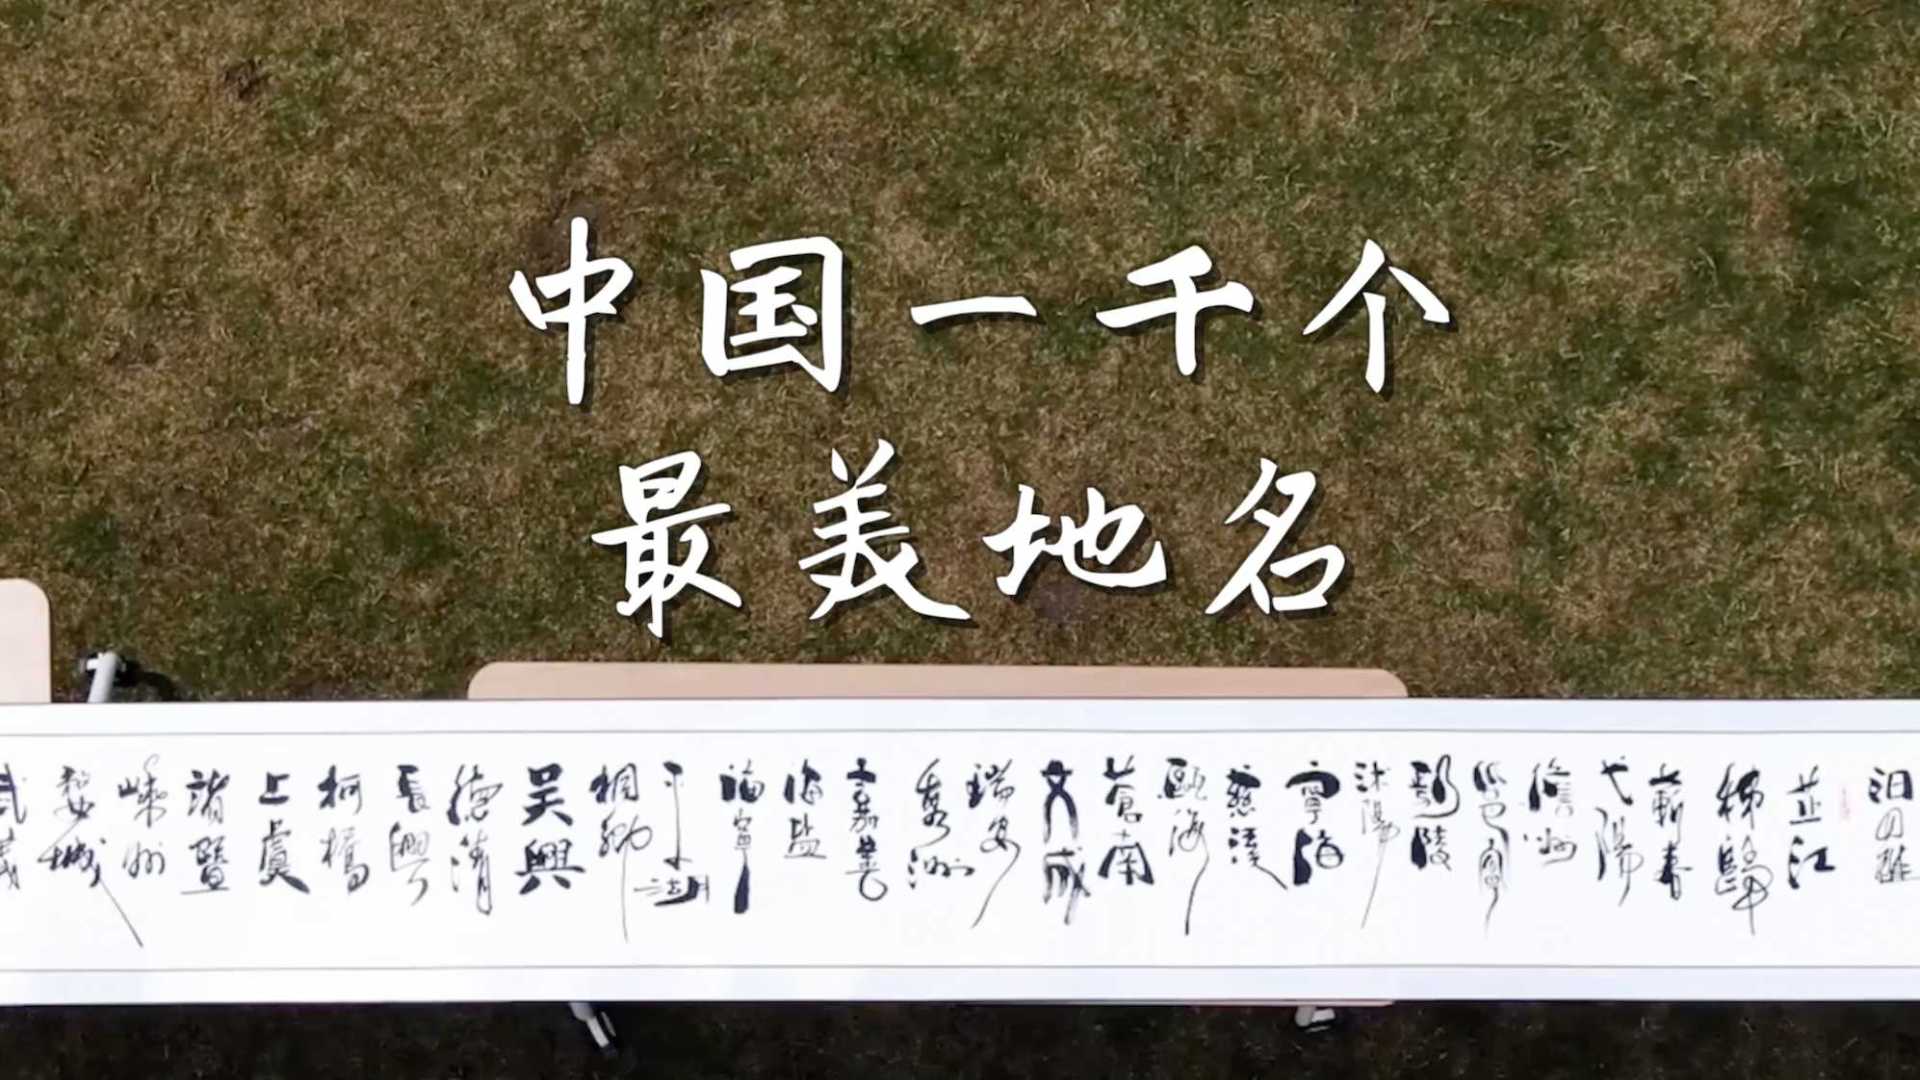 传播中国地名和汉字文化 杭州书法家用一千个地名做百米长卷